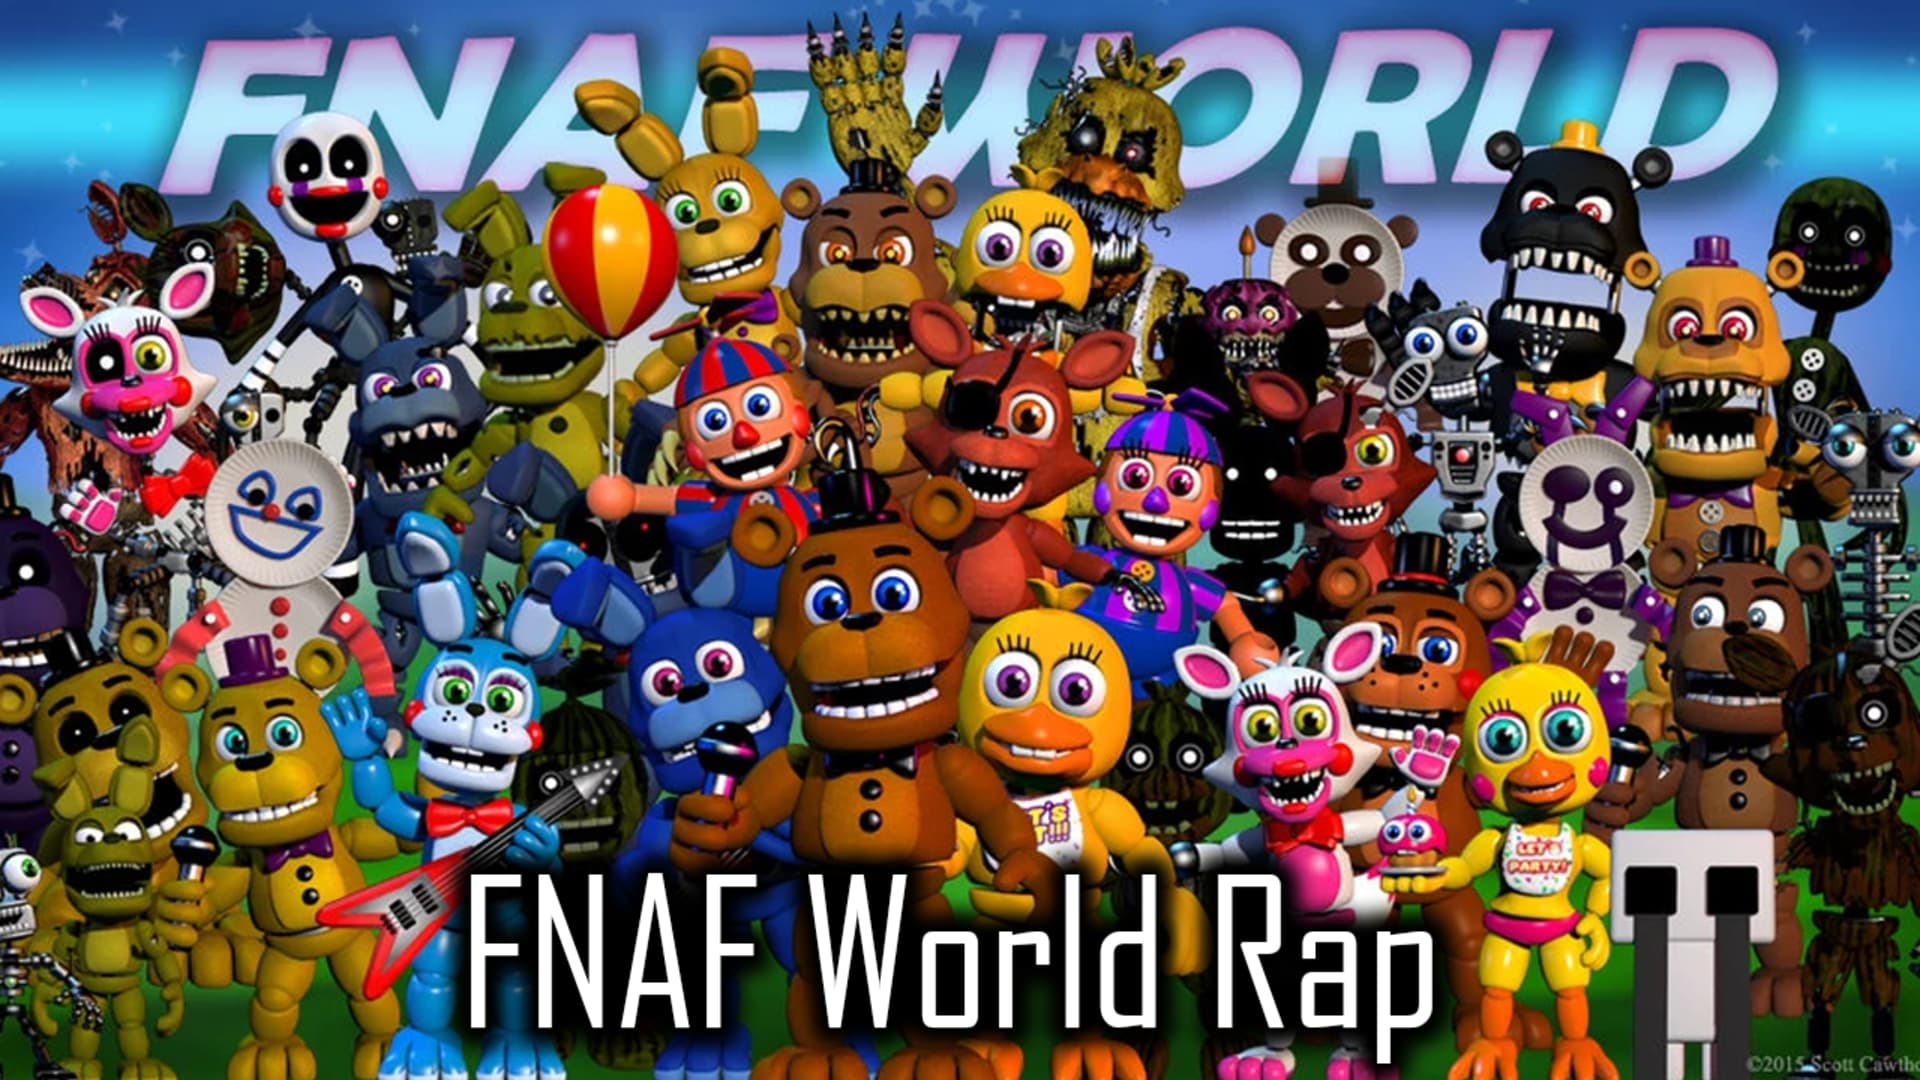 FNAF WORLD ALL CHARACTERS, FNAF WORLD ALL ANIMATRONICS